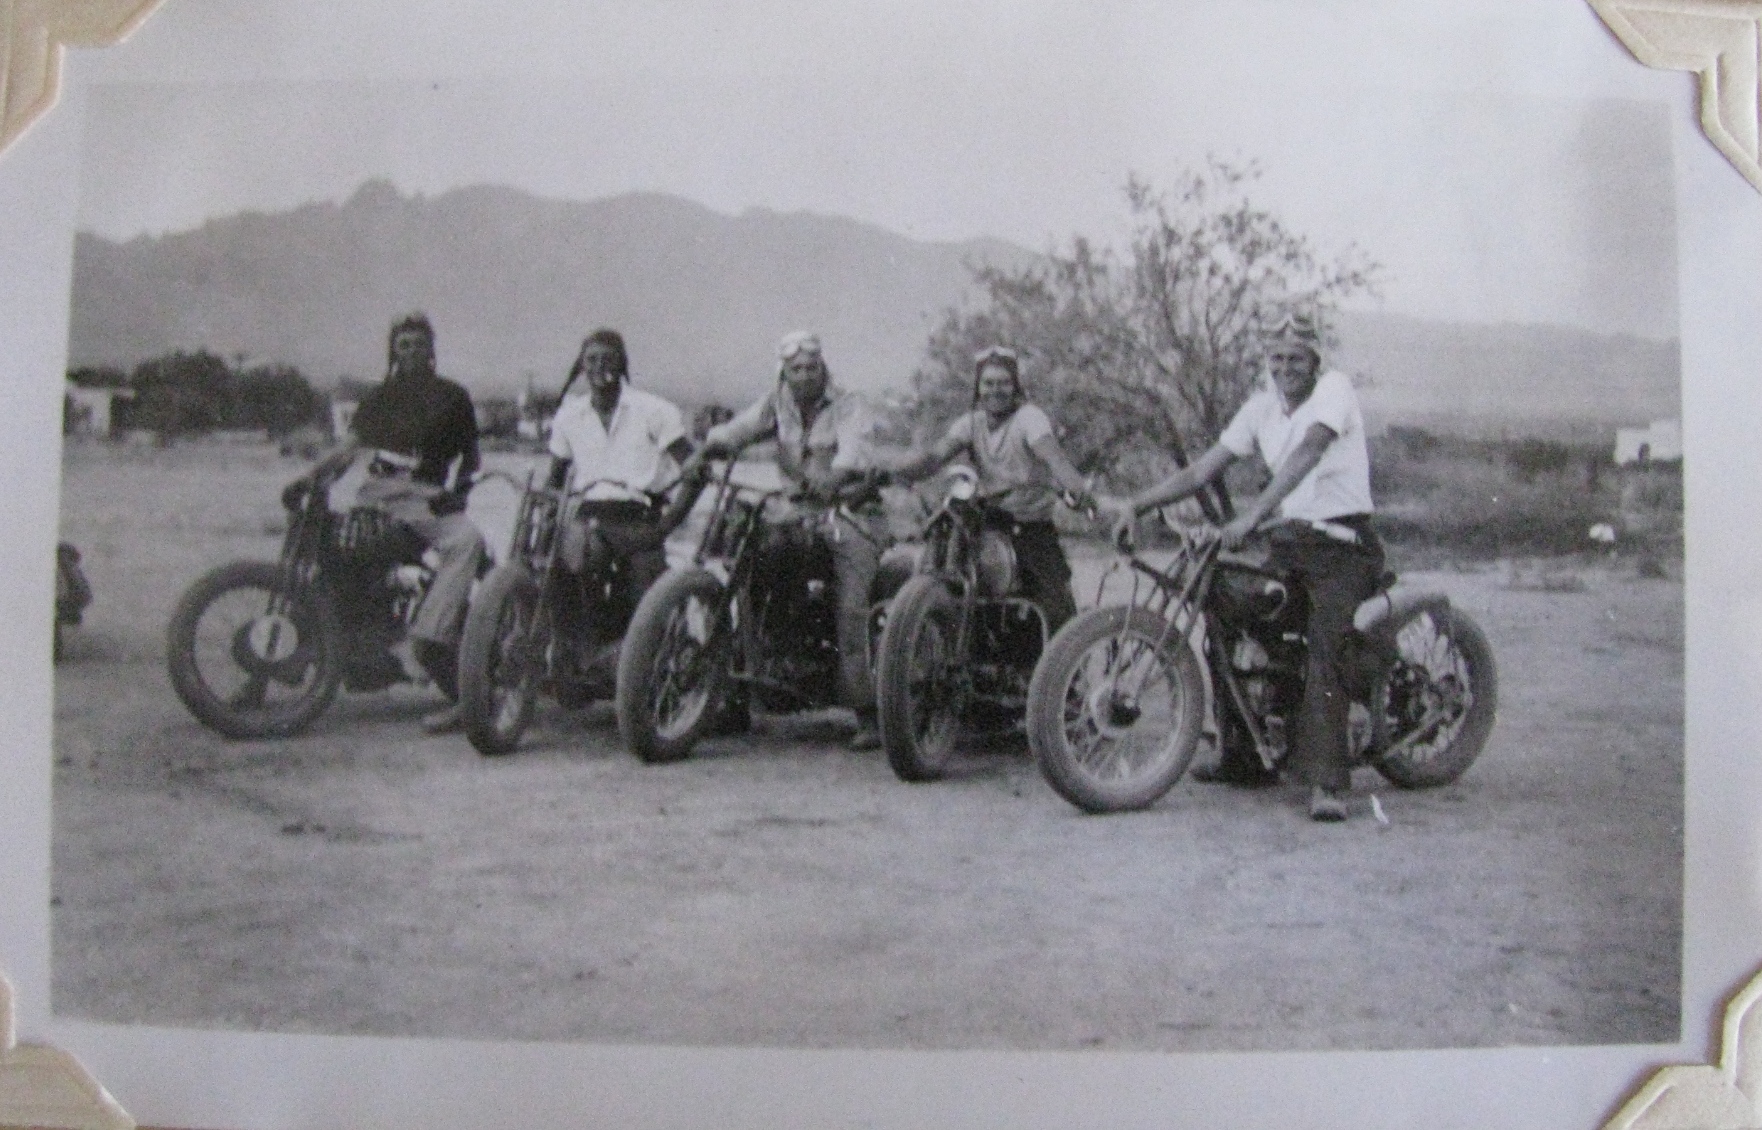 Motorcycle riders in Tucson Arizona c. 1930